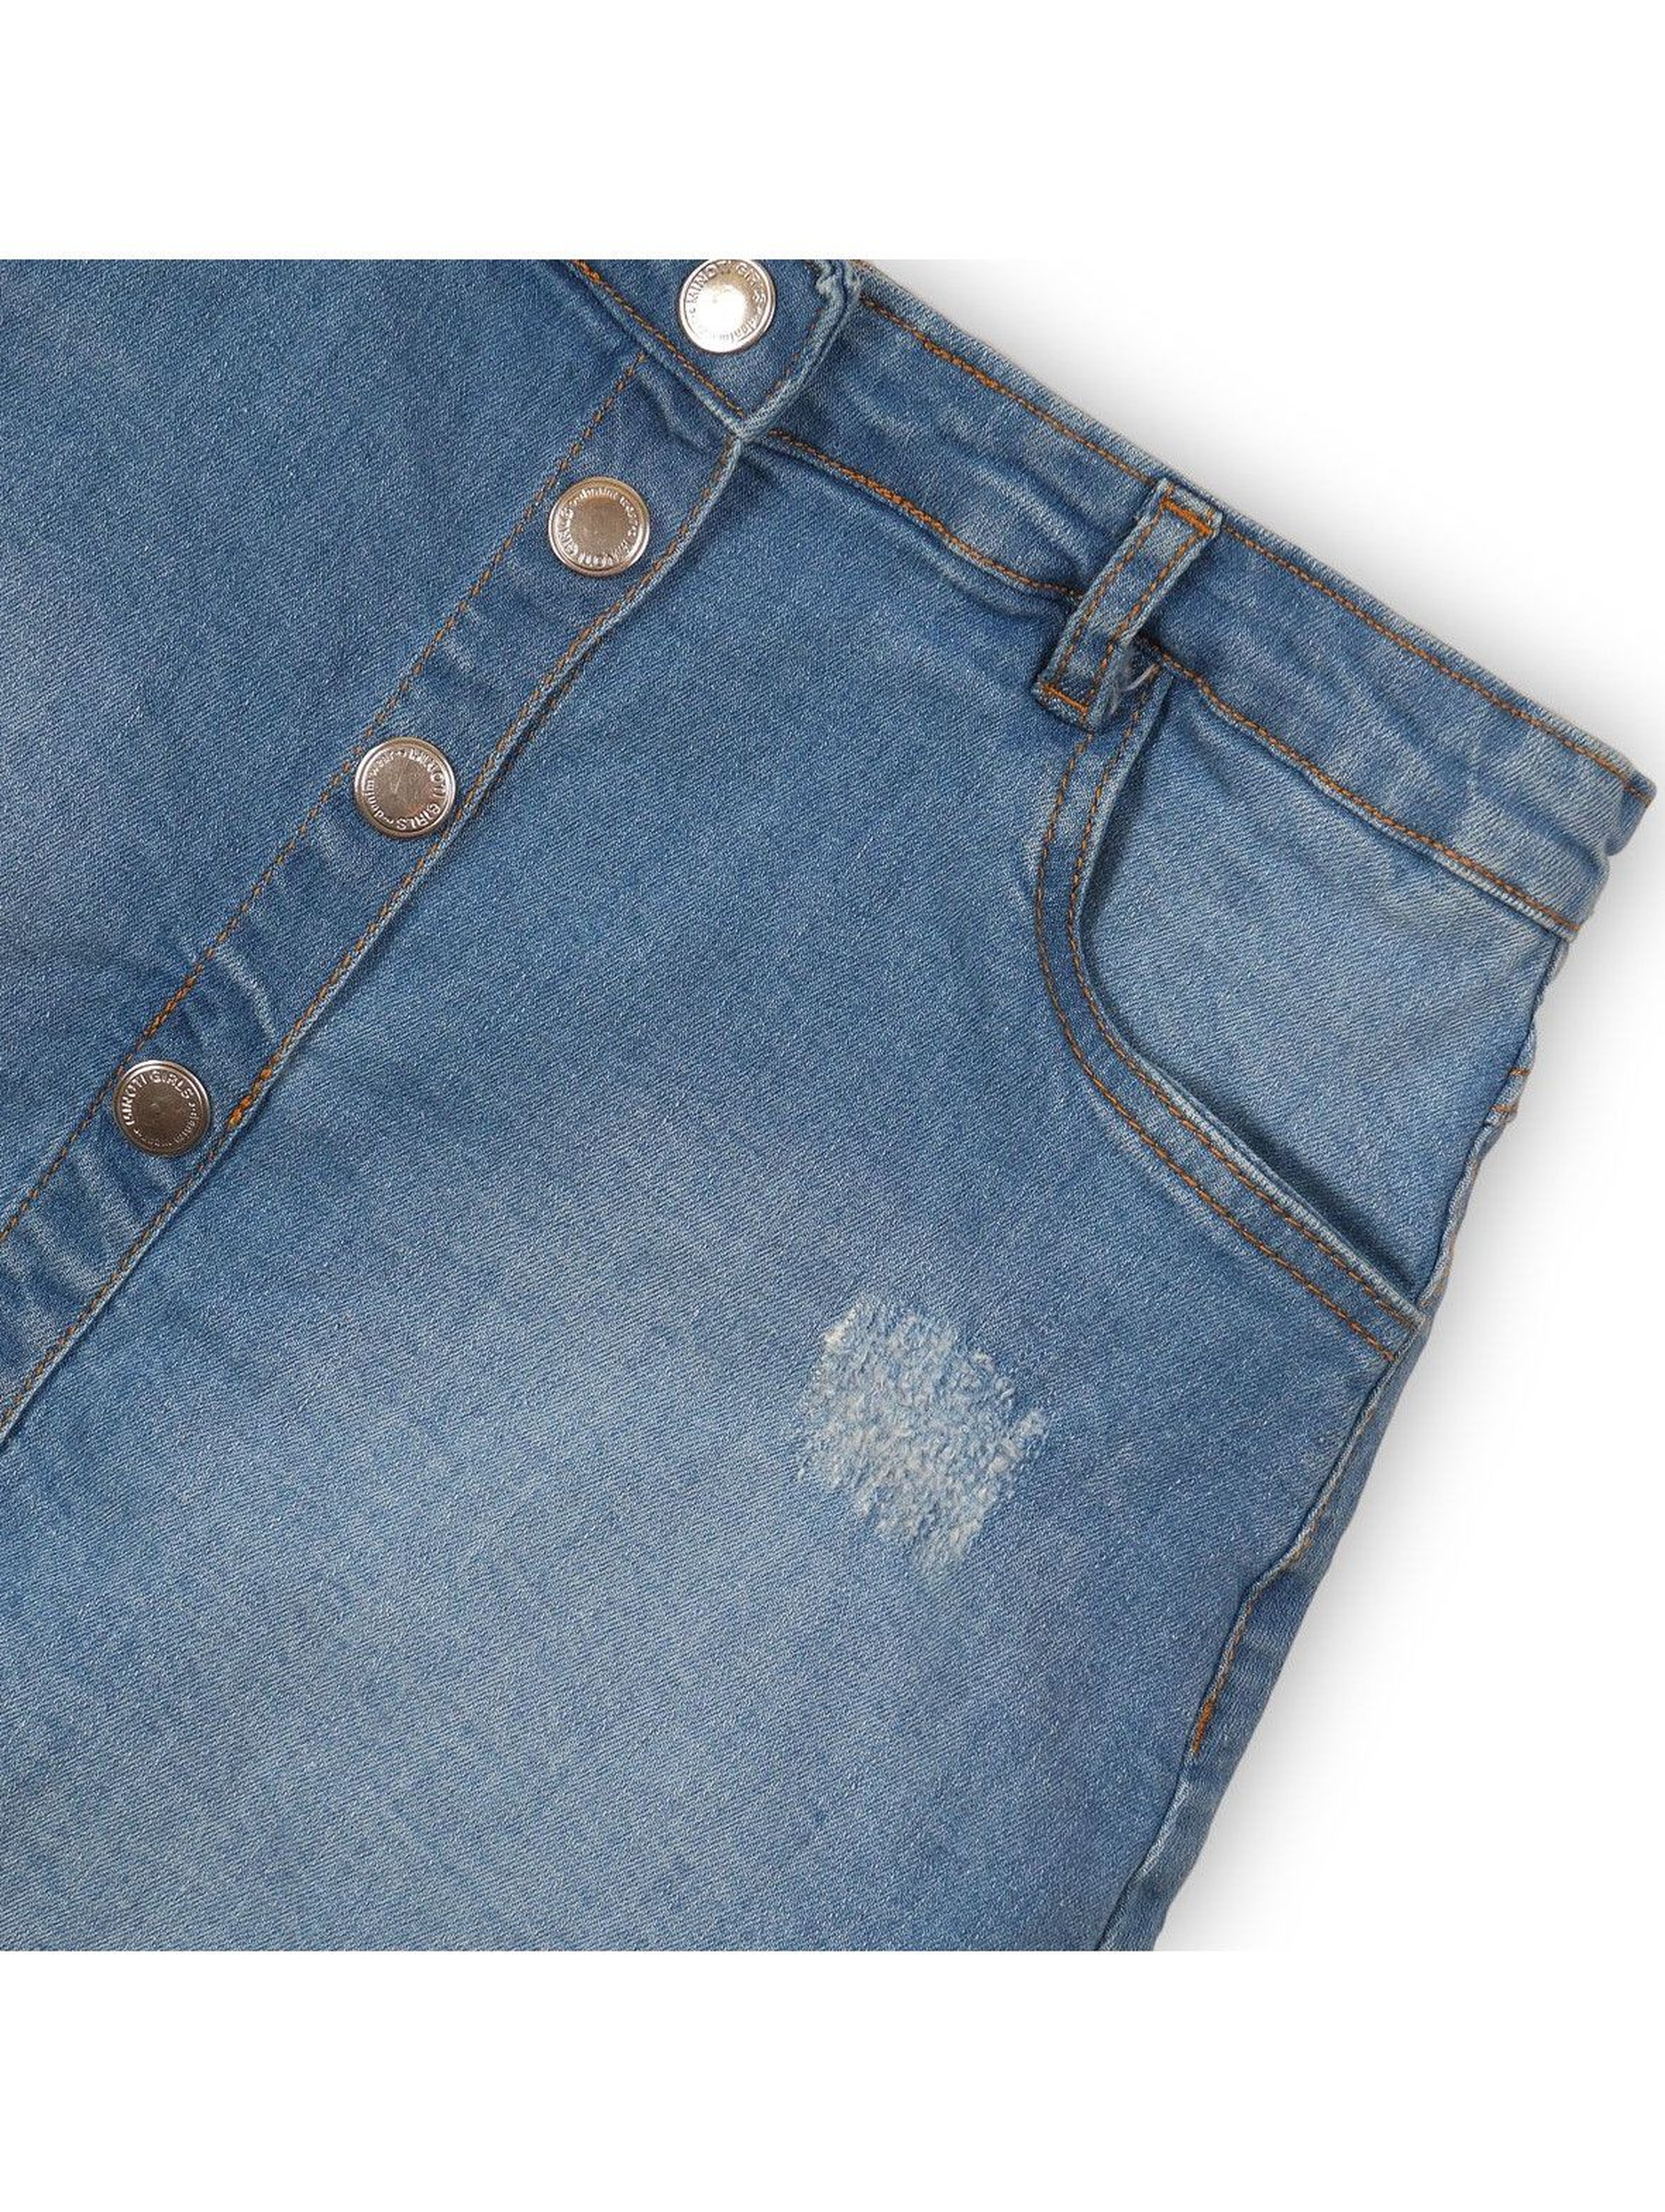 Spódnica dziewczęca jeansowa z przetarciami